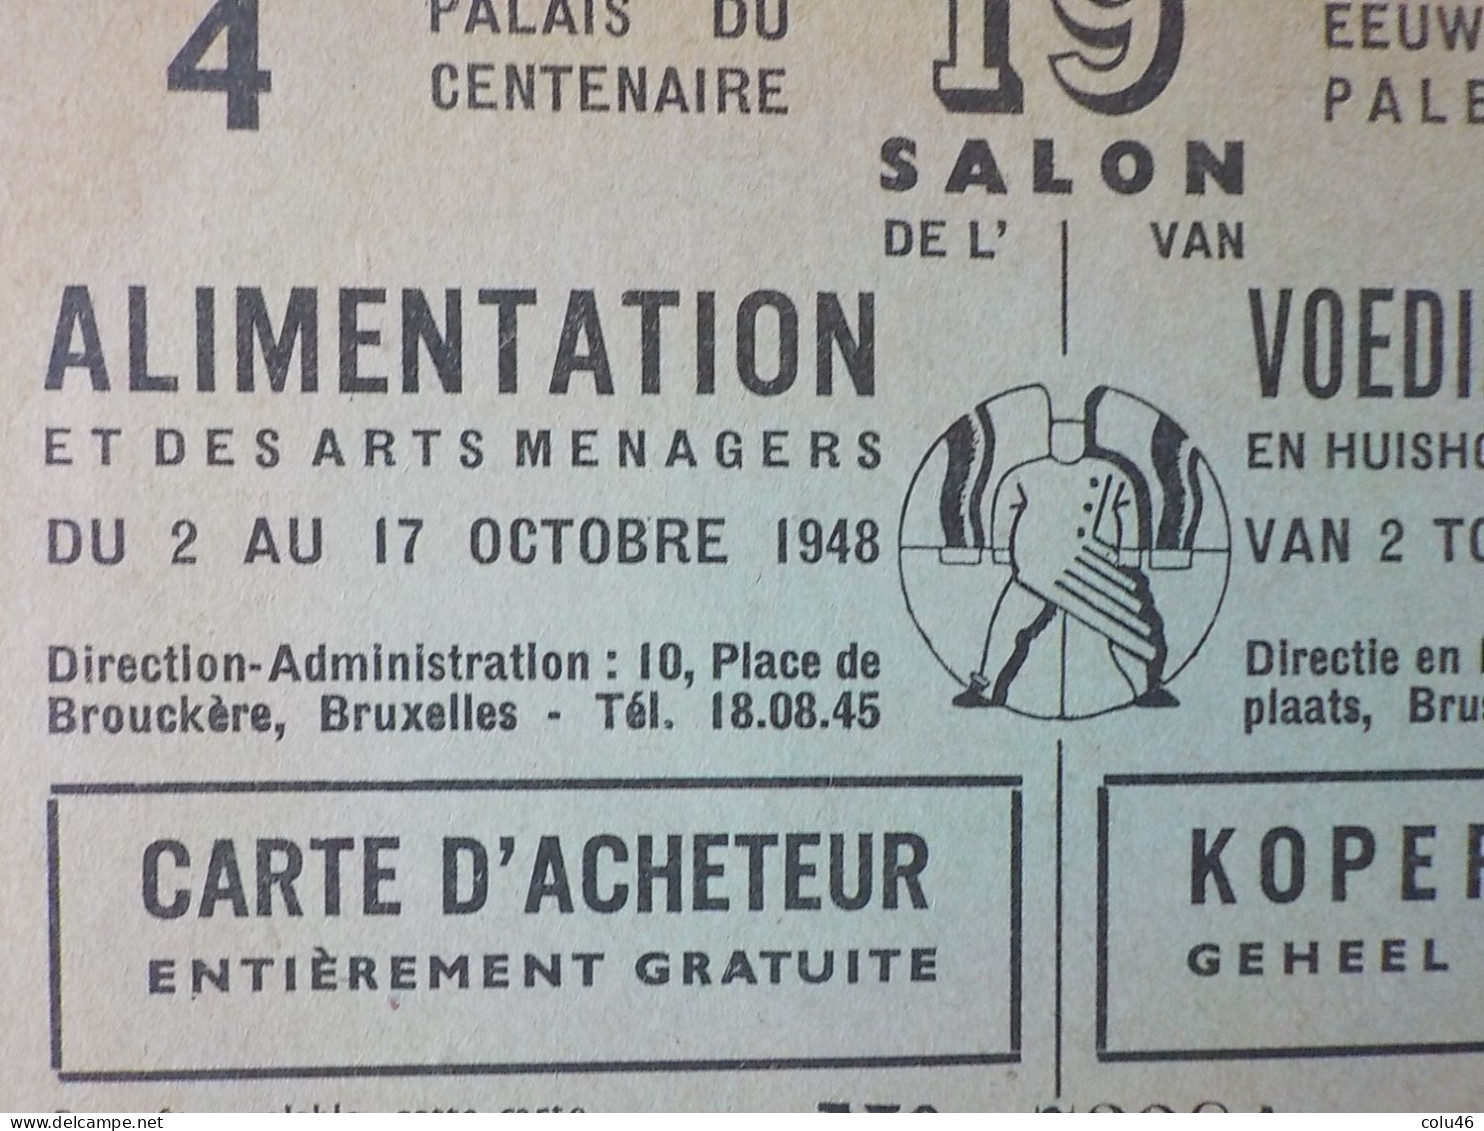 1948 Bruxelles Pub Palais Du Centenaire 19ème Salon Alimentation & Arts Ménagers Eeuwfeest Voedingsmiddelen - Feiern, Ereignisse